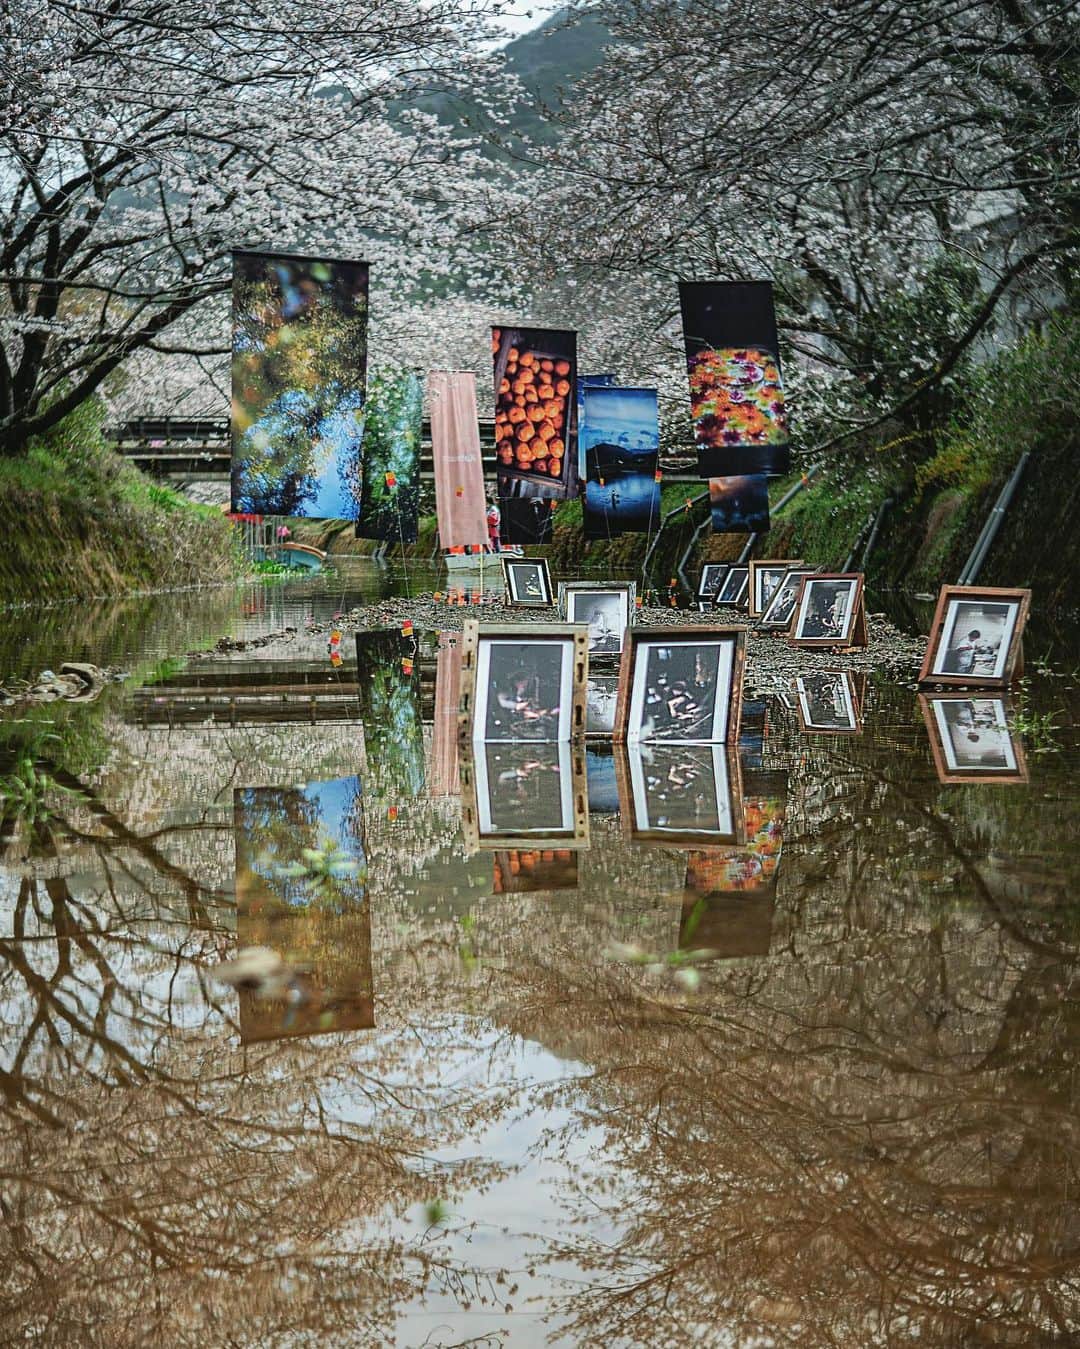 大杉隼平のインスタグラム：「徳島県勝浦町での屋外展示がはじまりました。桜祭りに合わせての開催となります。  雨が降ったからこそ見える景色。水量により見えない時間もありますが川底にもプリントを展示しています。  #写真 #写真展 #展示 #屋外展示 #徳島 #勝浦 #勝浦町 #桜祭り #勝浦さくら祭り #tokushima #katsuura #exhibition #leica #leicam #leicaphotography #leicaphoto #四国 #noctilux #noctilux50mm #shumpeiohsugi_photographer #shumpeiohsugi #大杉隼平写真展 #大杉隼平」